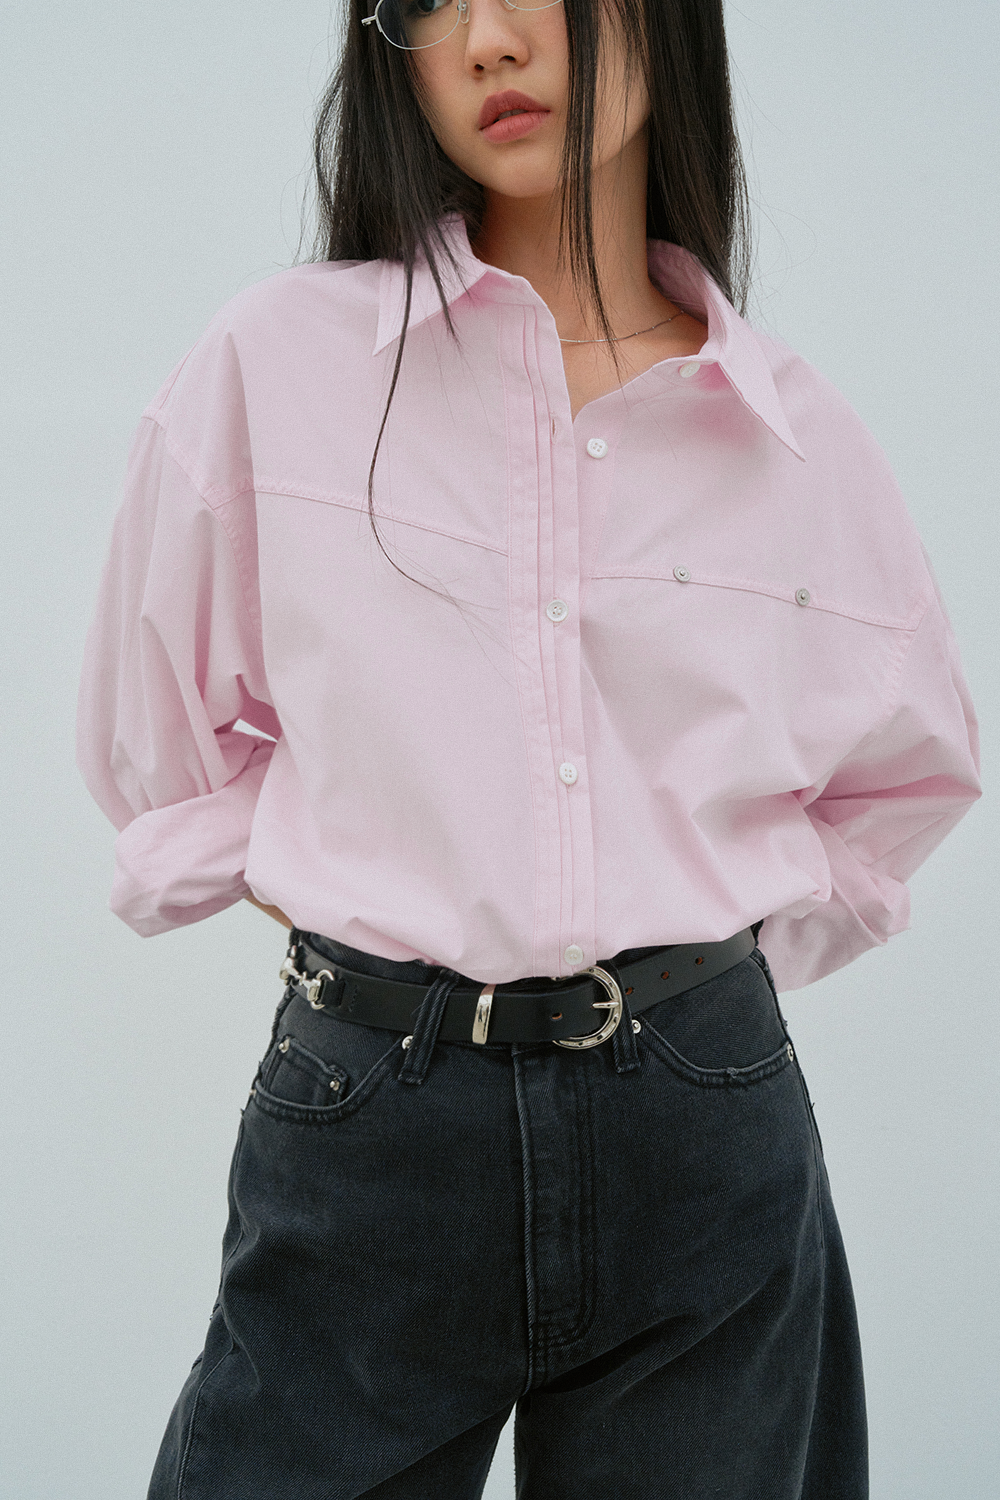 Garment Shirt (Pink) 3차 오픈 4/19 12pm